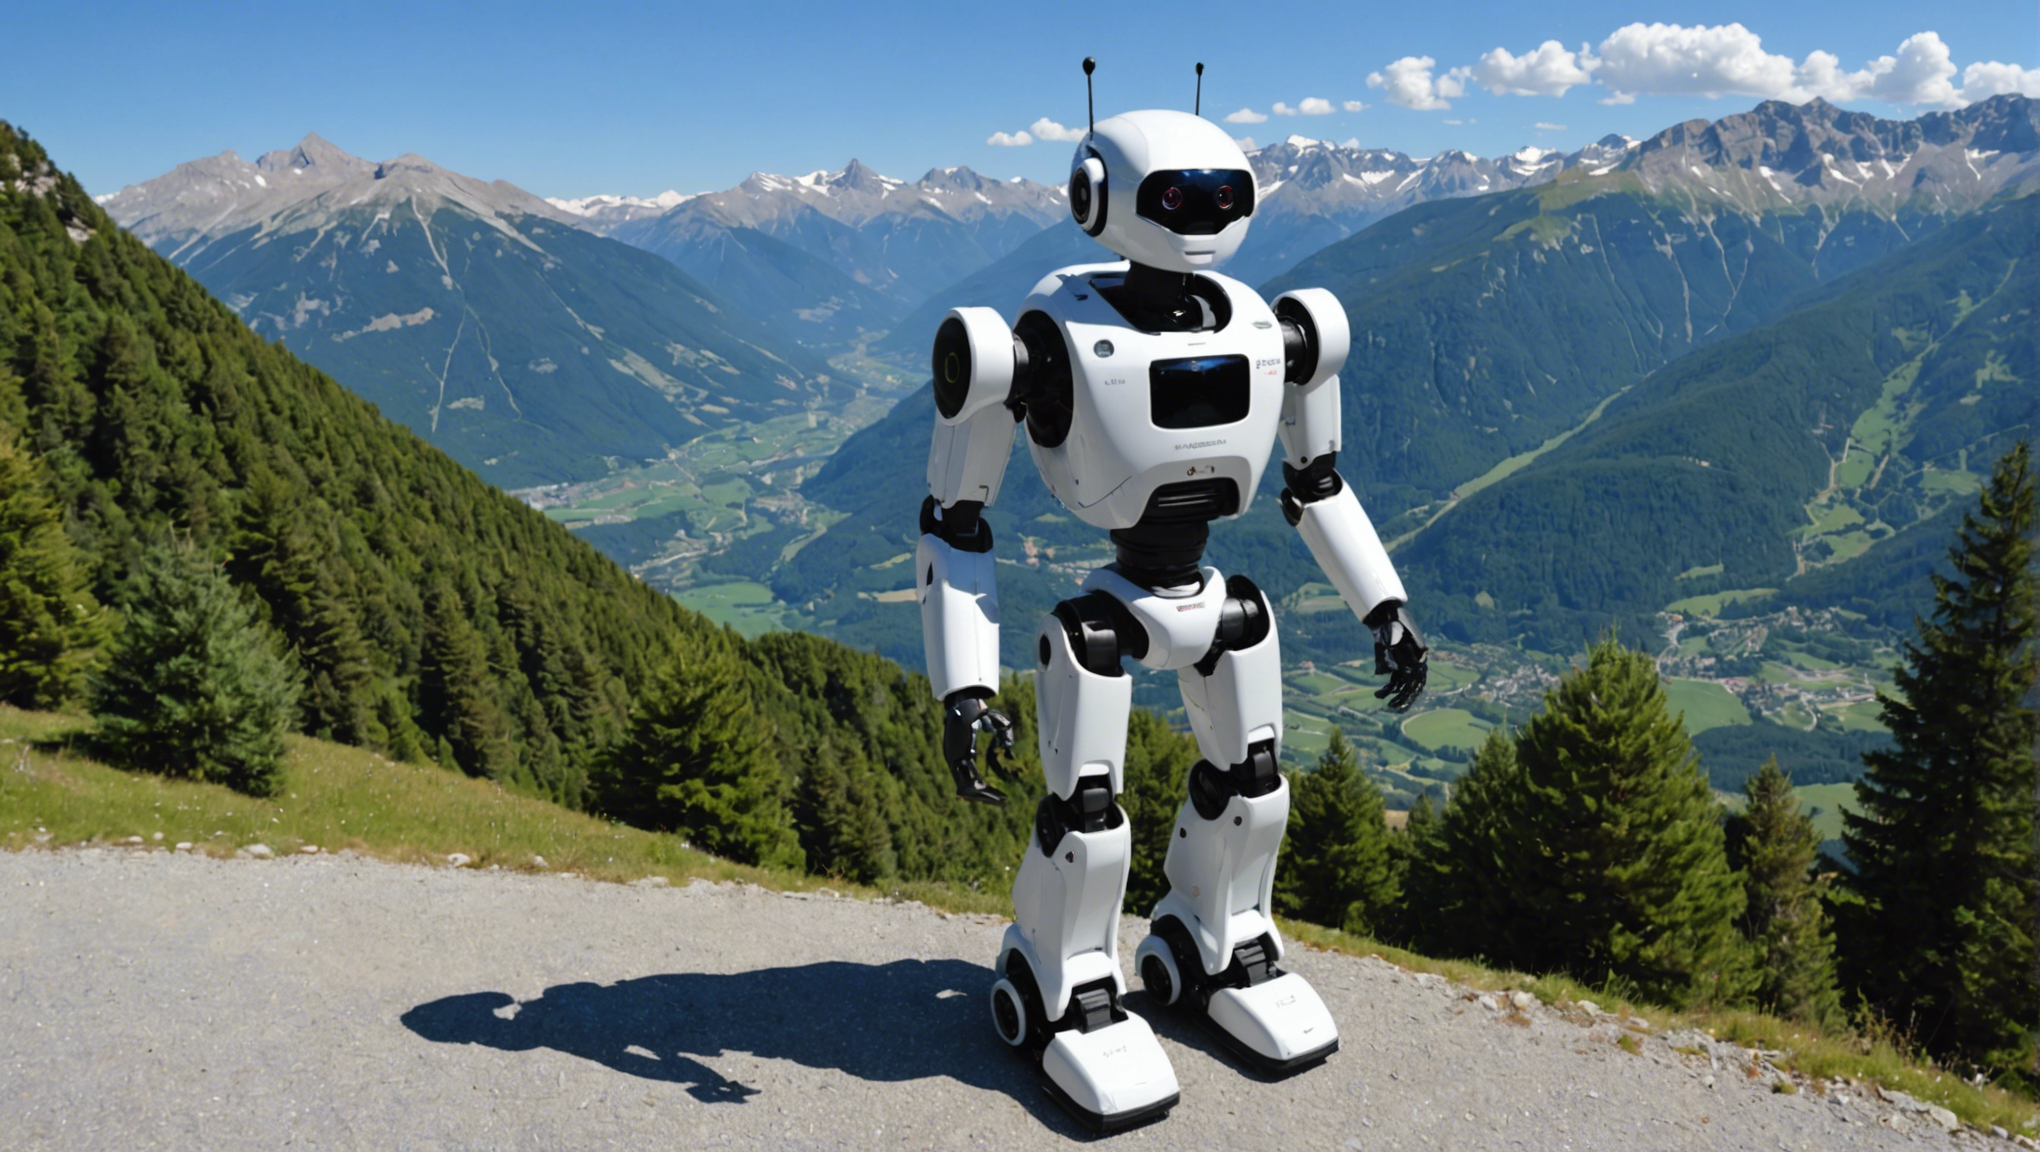 louez un robot dans les alpes de haute-provence pour simplifier vos tâches quotidiennes. découvrez nos offres de location de robots et profitez d'un service de qualité.